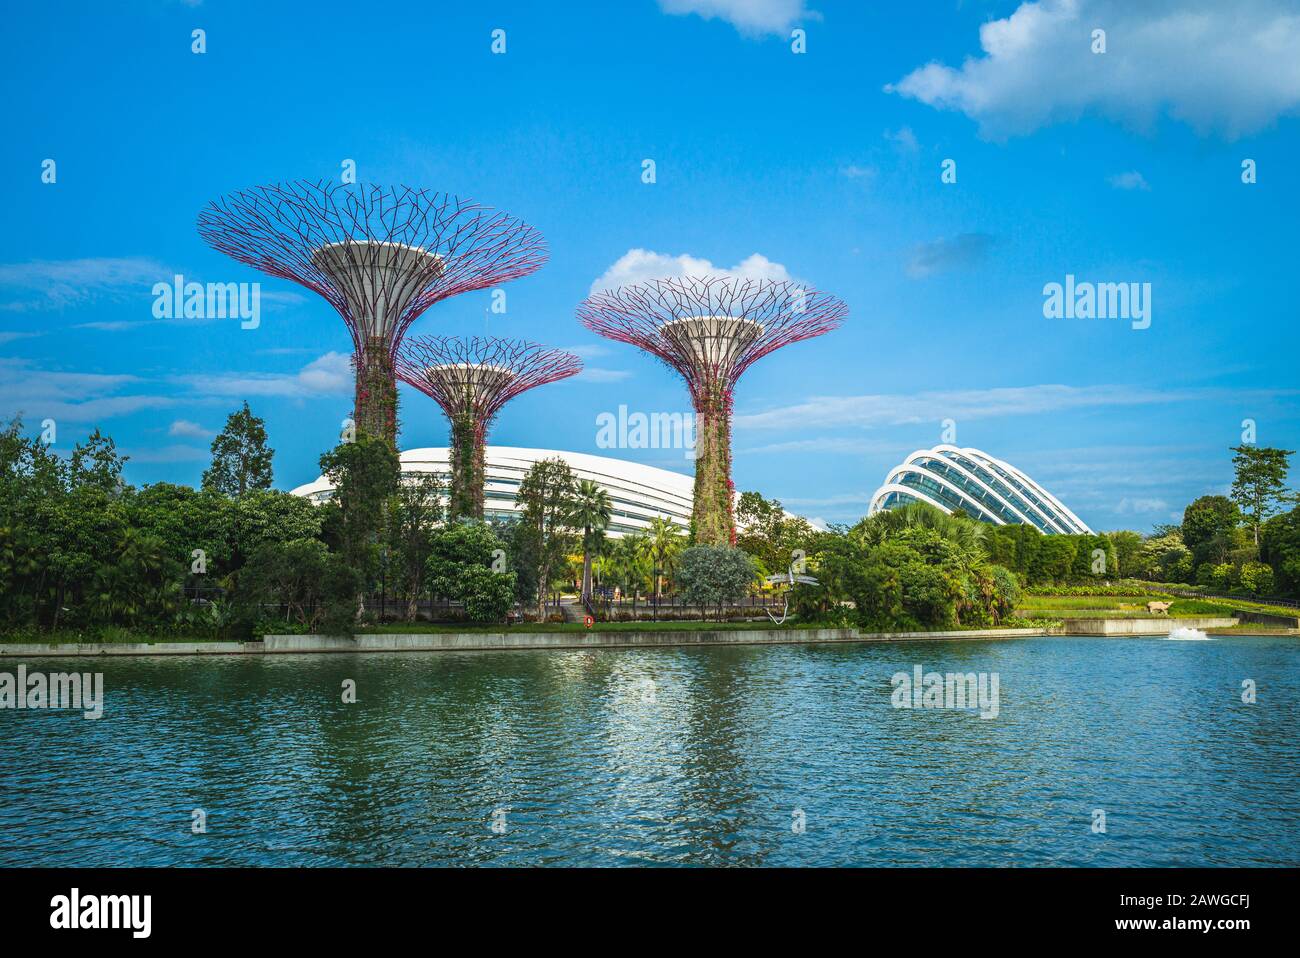 Singapore, Singapore - 6 febbraio 2020: Scenario di giardini vicino alla baia con Flower Dome, Cloud Forest e Supertree Grove alla baia del porto turistico di notte Foto Stock